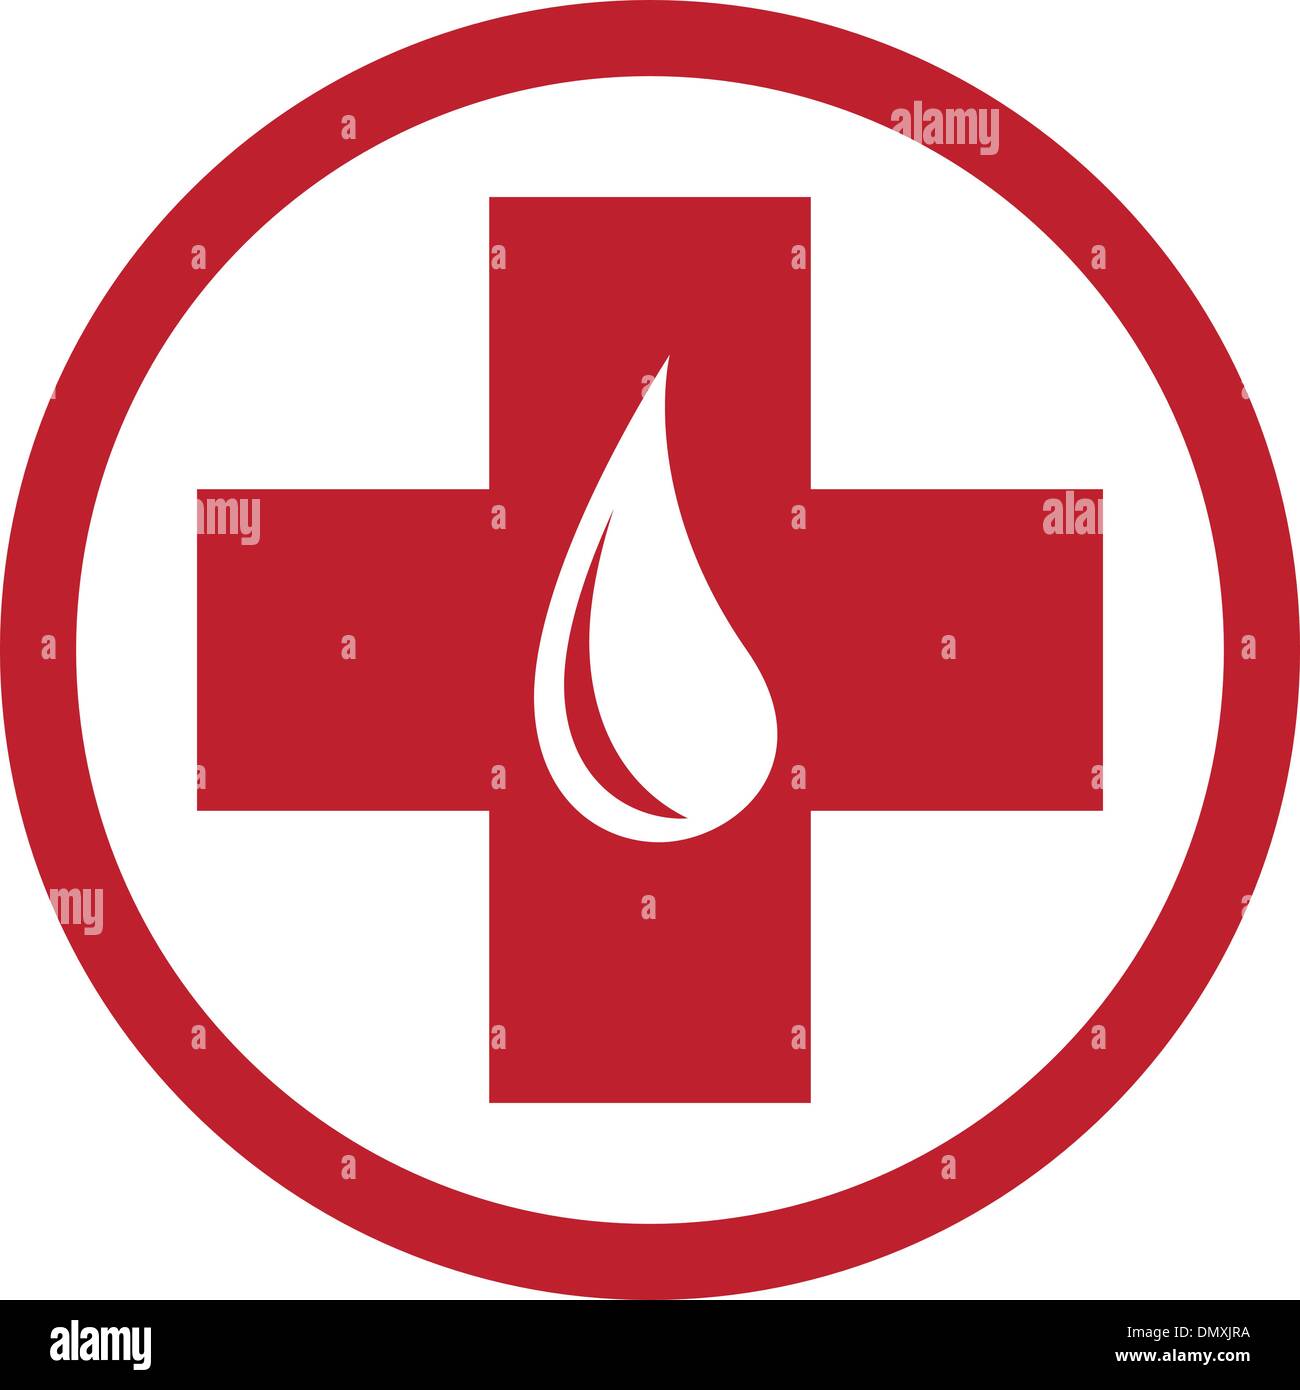 La donazione di sangue modello emblema Illustrazione Vettoriale